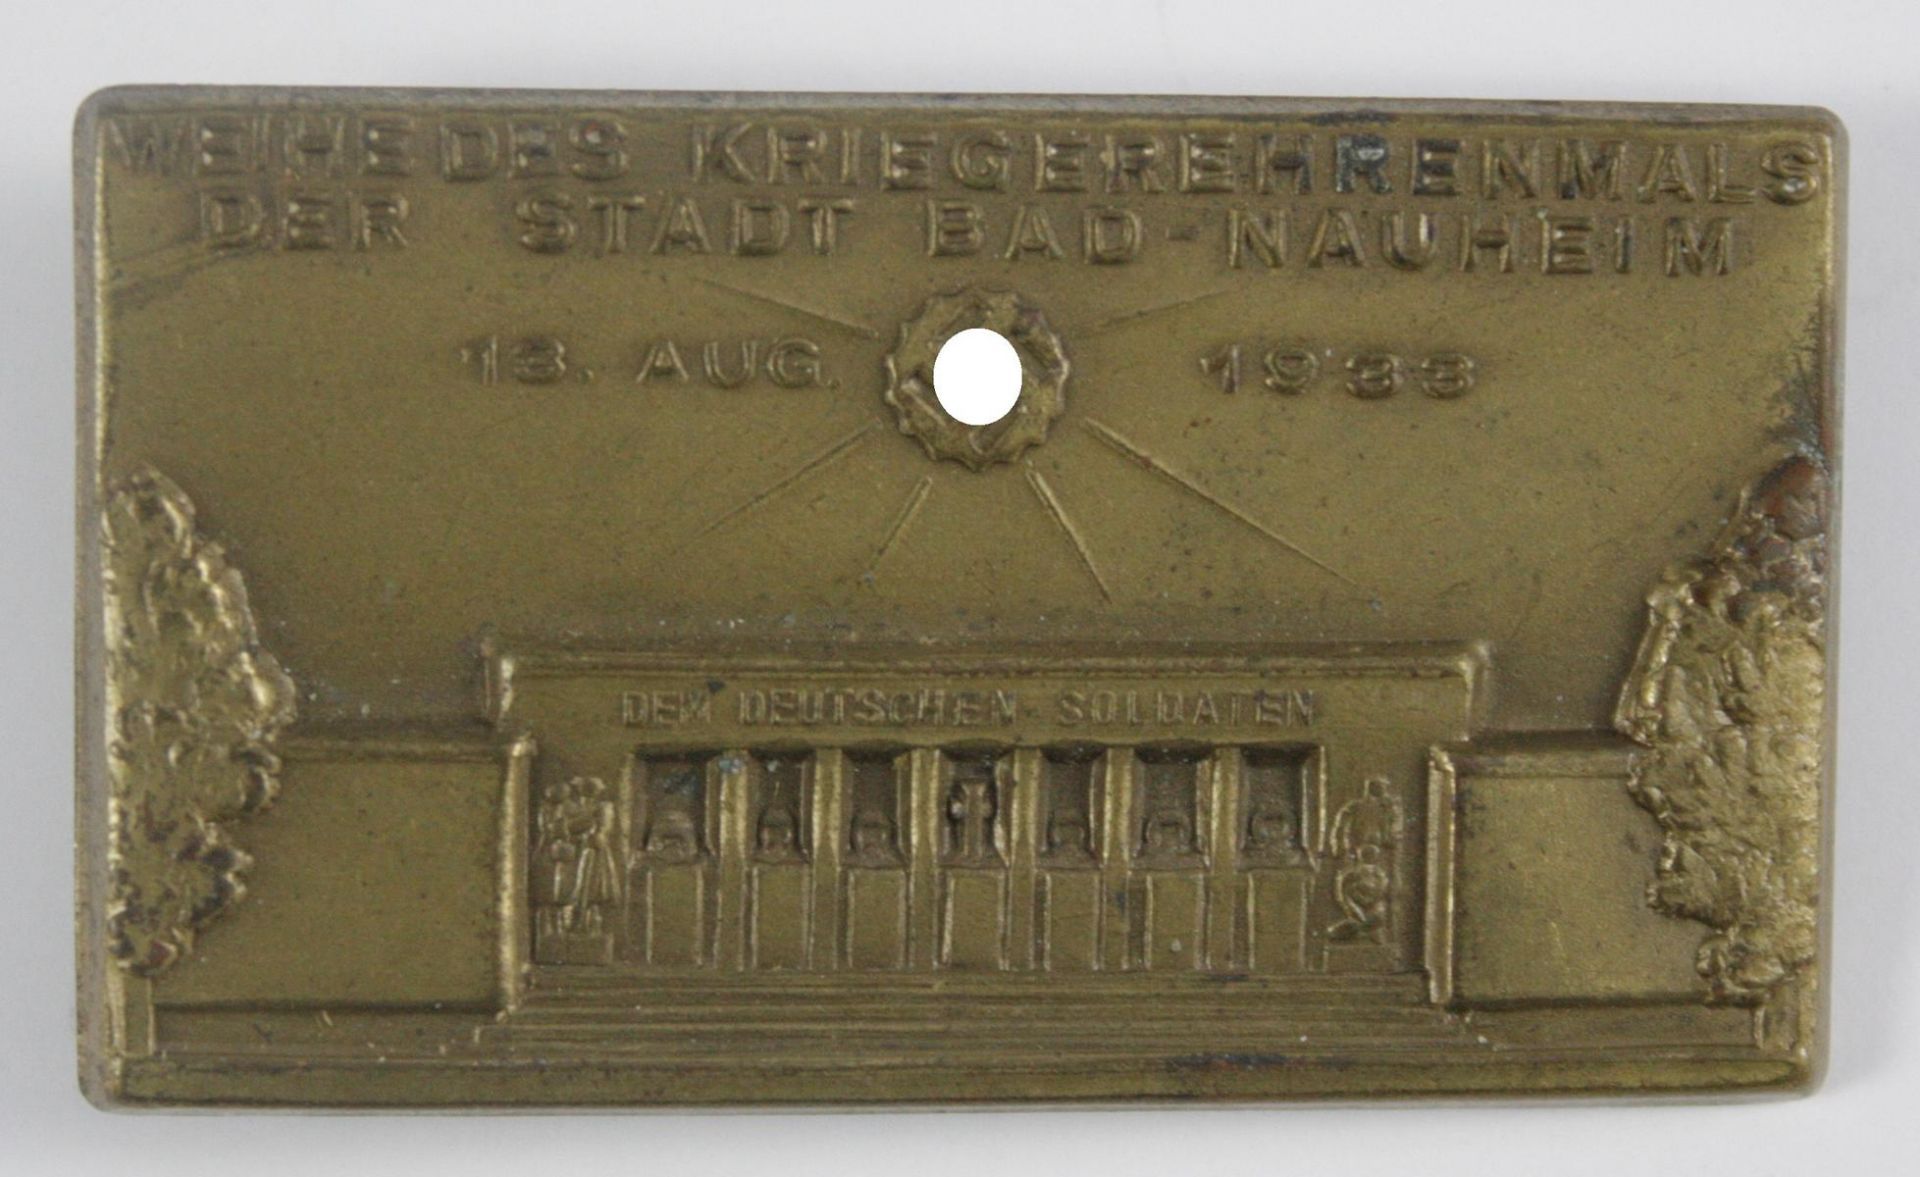 Tragbares Abzeichen: Weihe des Kriegerehrenmals der Stadt Bad Nauheim 13. August 1933